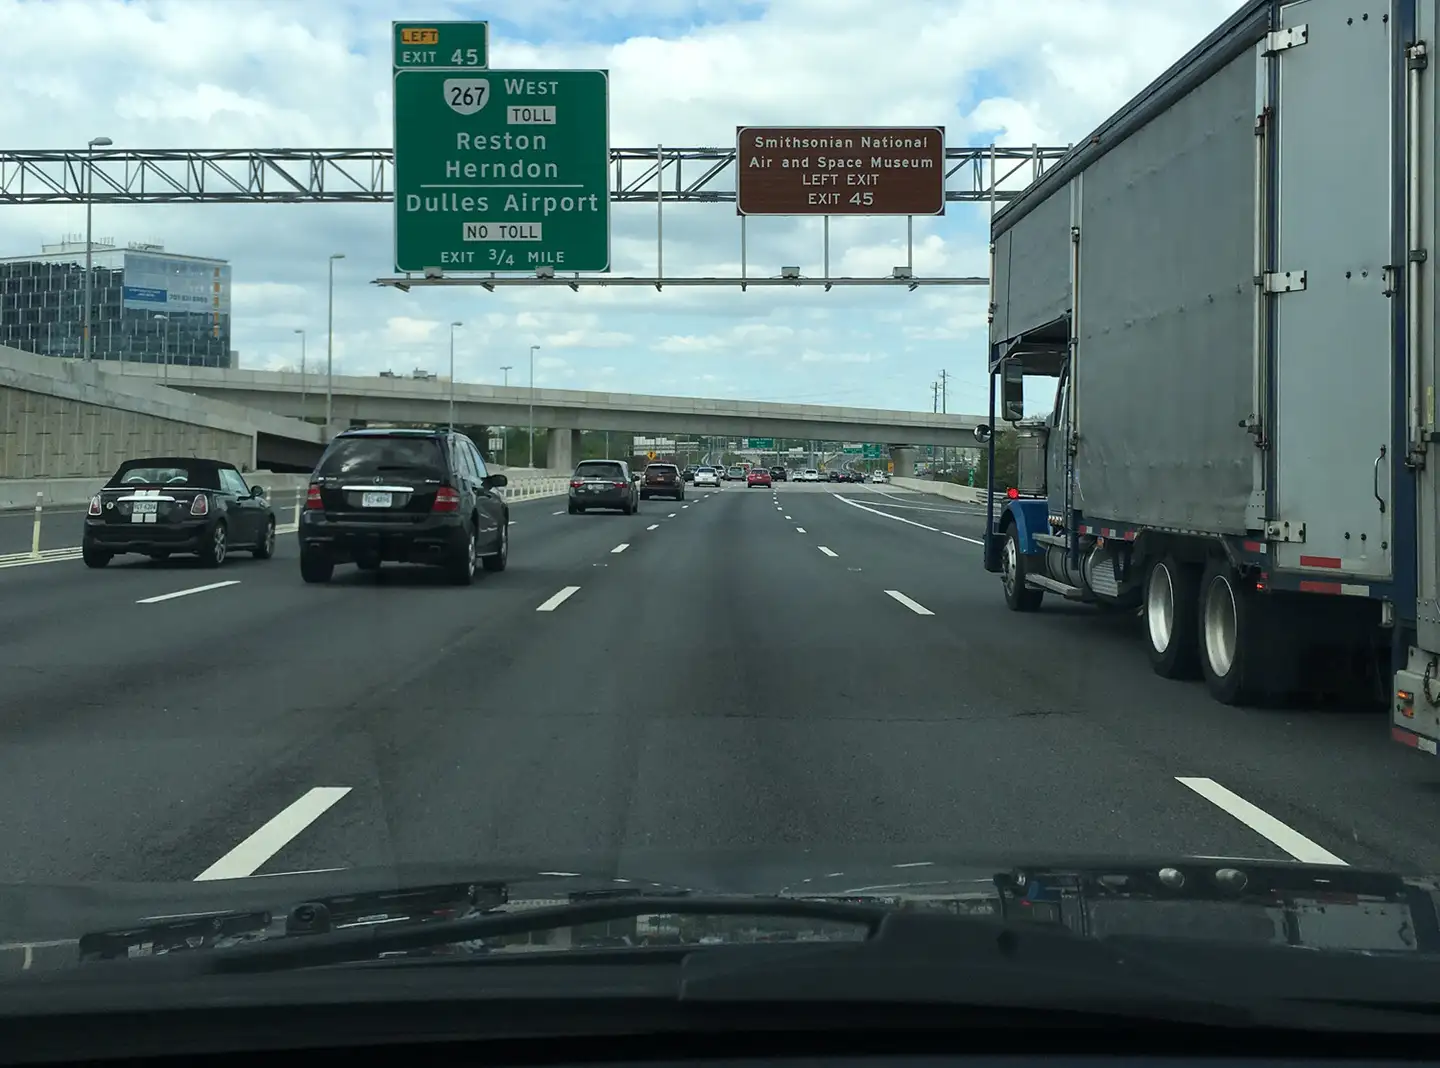 如何在美国驾车 美国道路行驶白皮书 实景图说明美国道路与路标系统 自驾游必读 万字百图技术贴 知乎